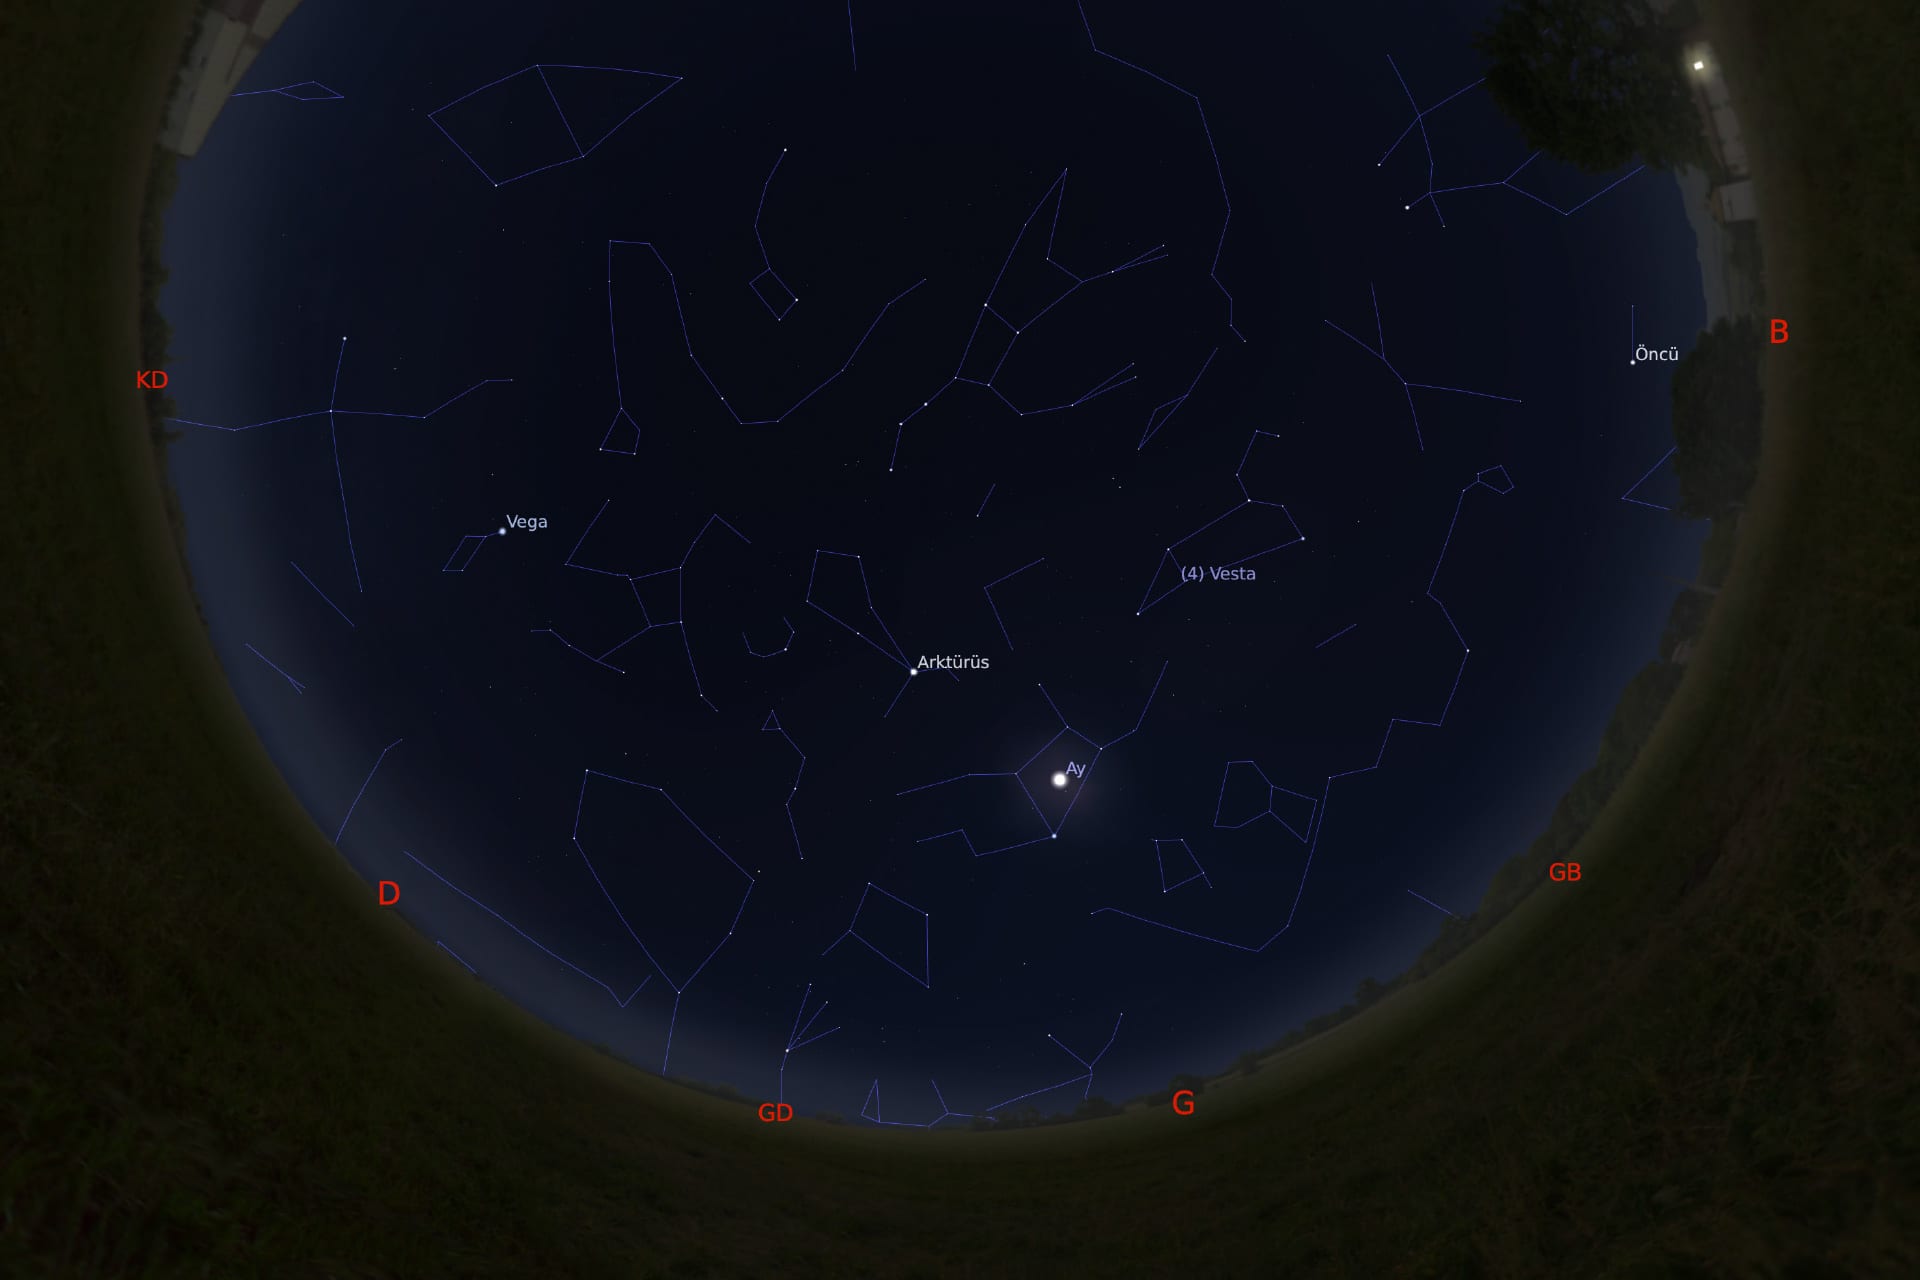 1 Mart 2021 - saat 03:30'daki gökyüzü görüntüsü